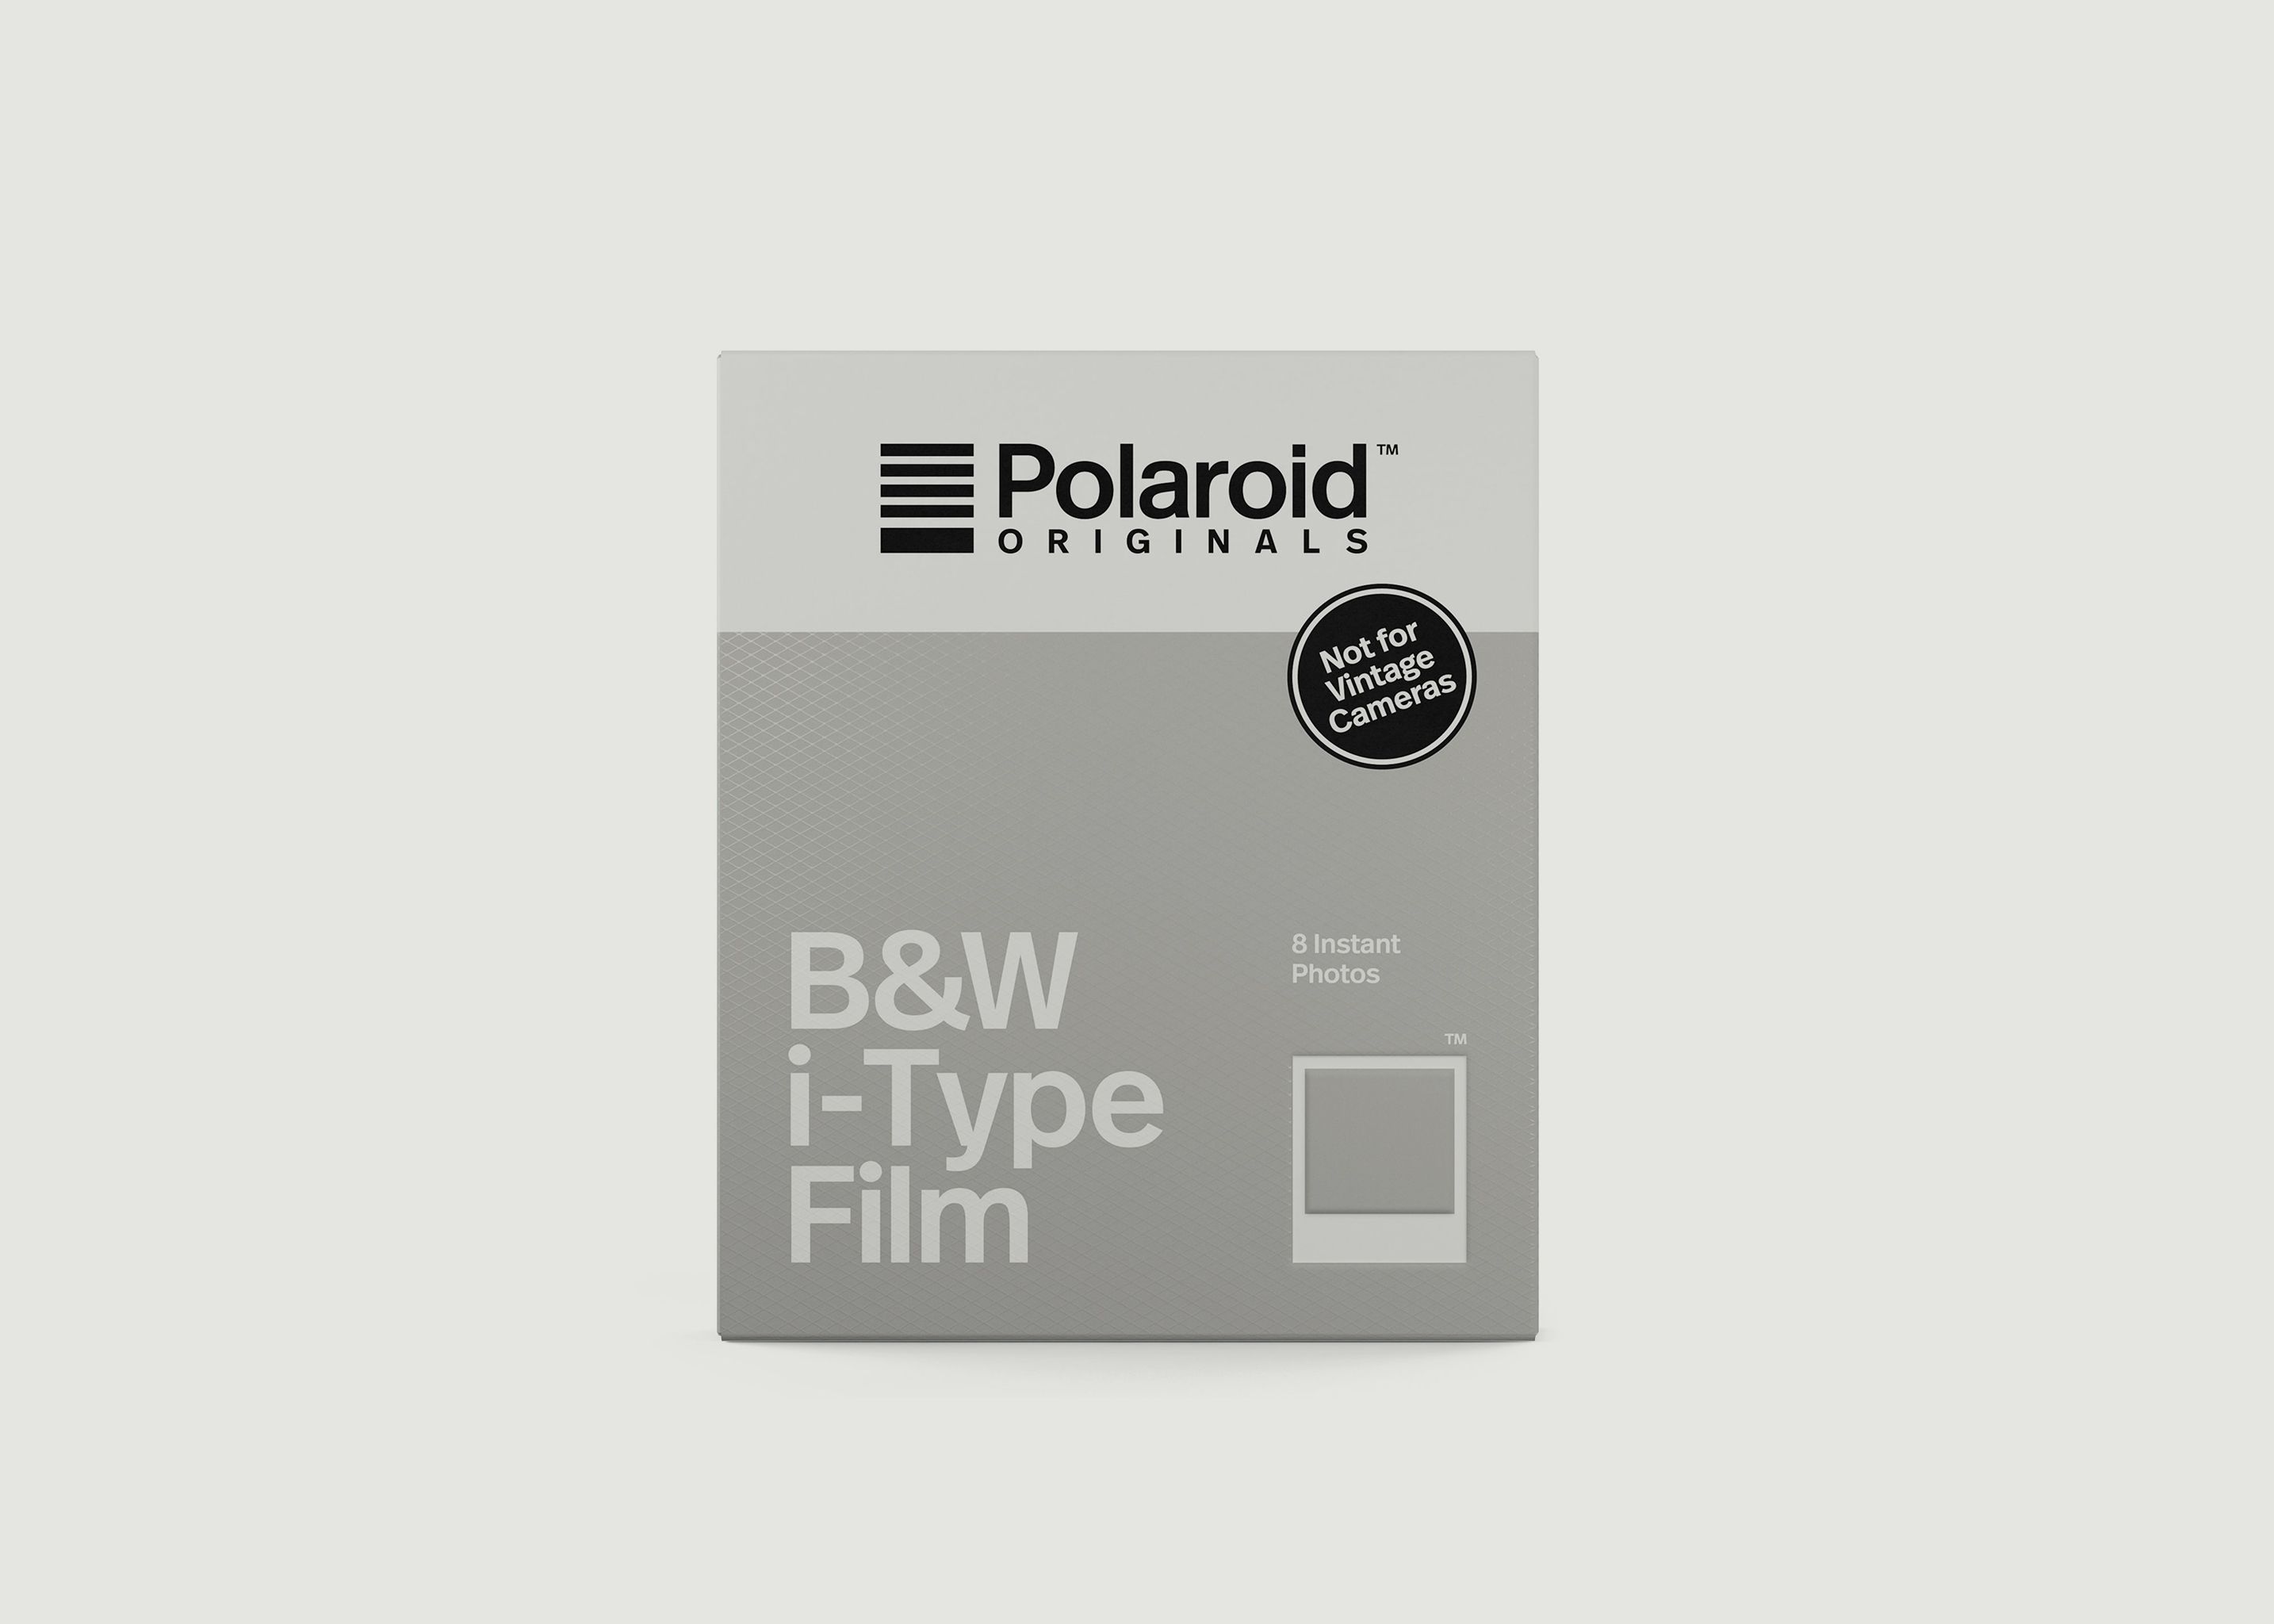 Intant Film - B&W Film for i-Type - Polaroid Originals